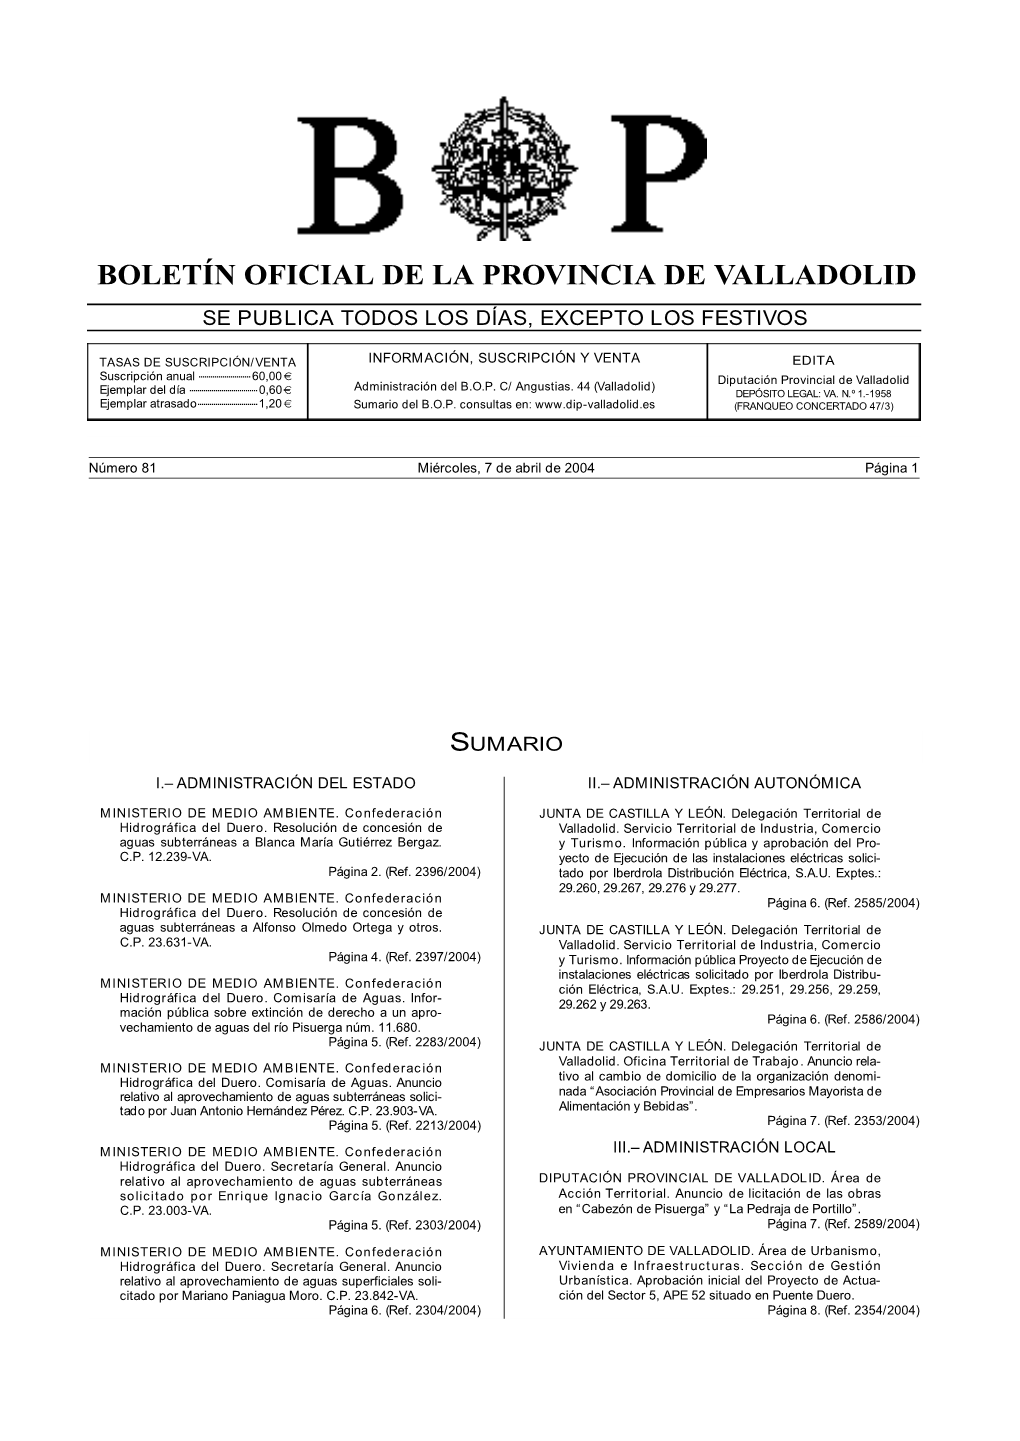 Boletín Oficial De La Provincia De Valladolid, Y Deberán Quedar Terminadas D E C I M O C U a R T A